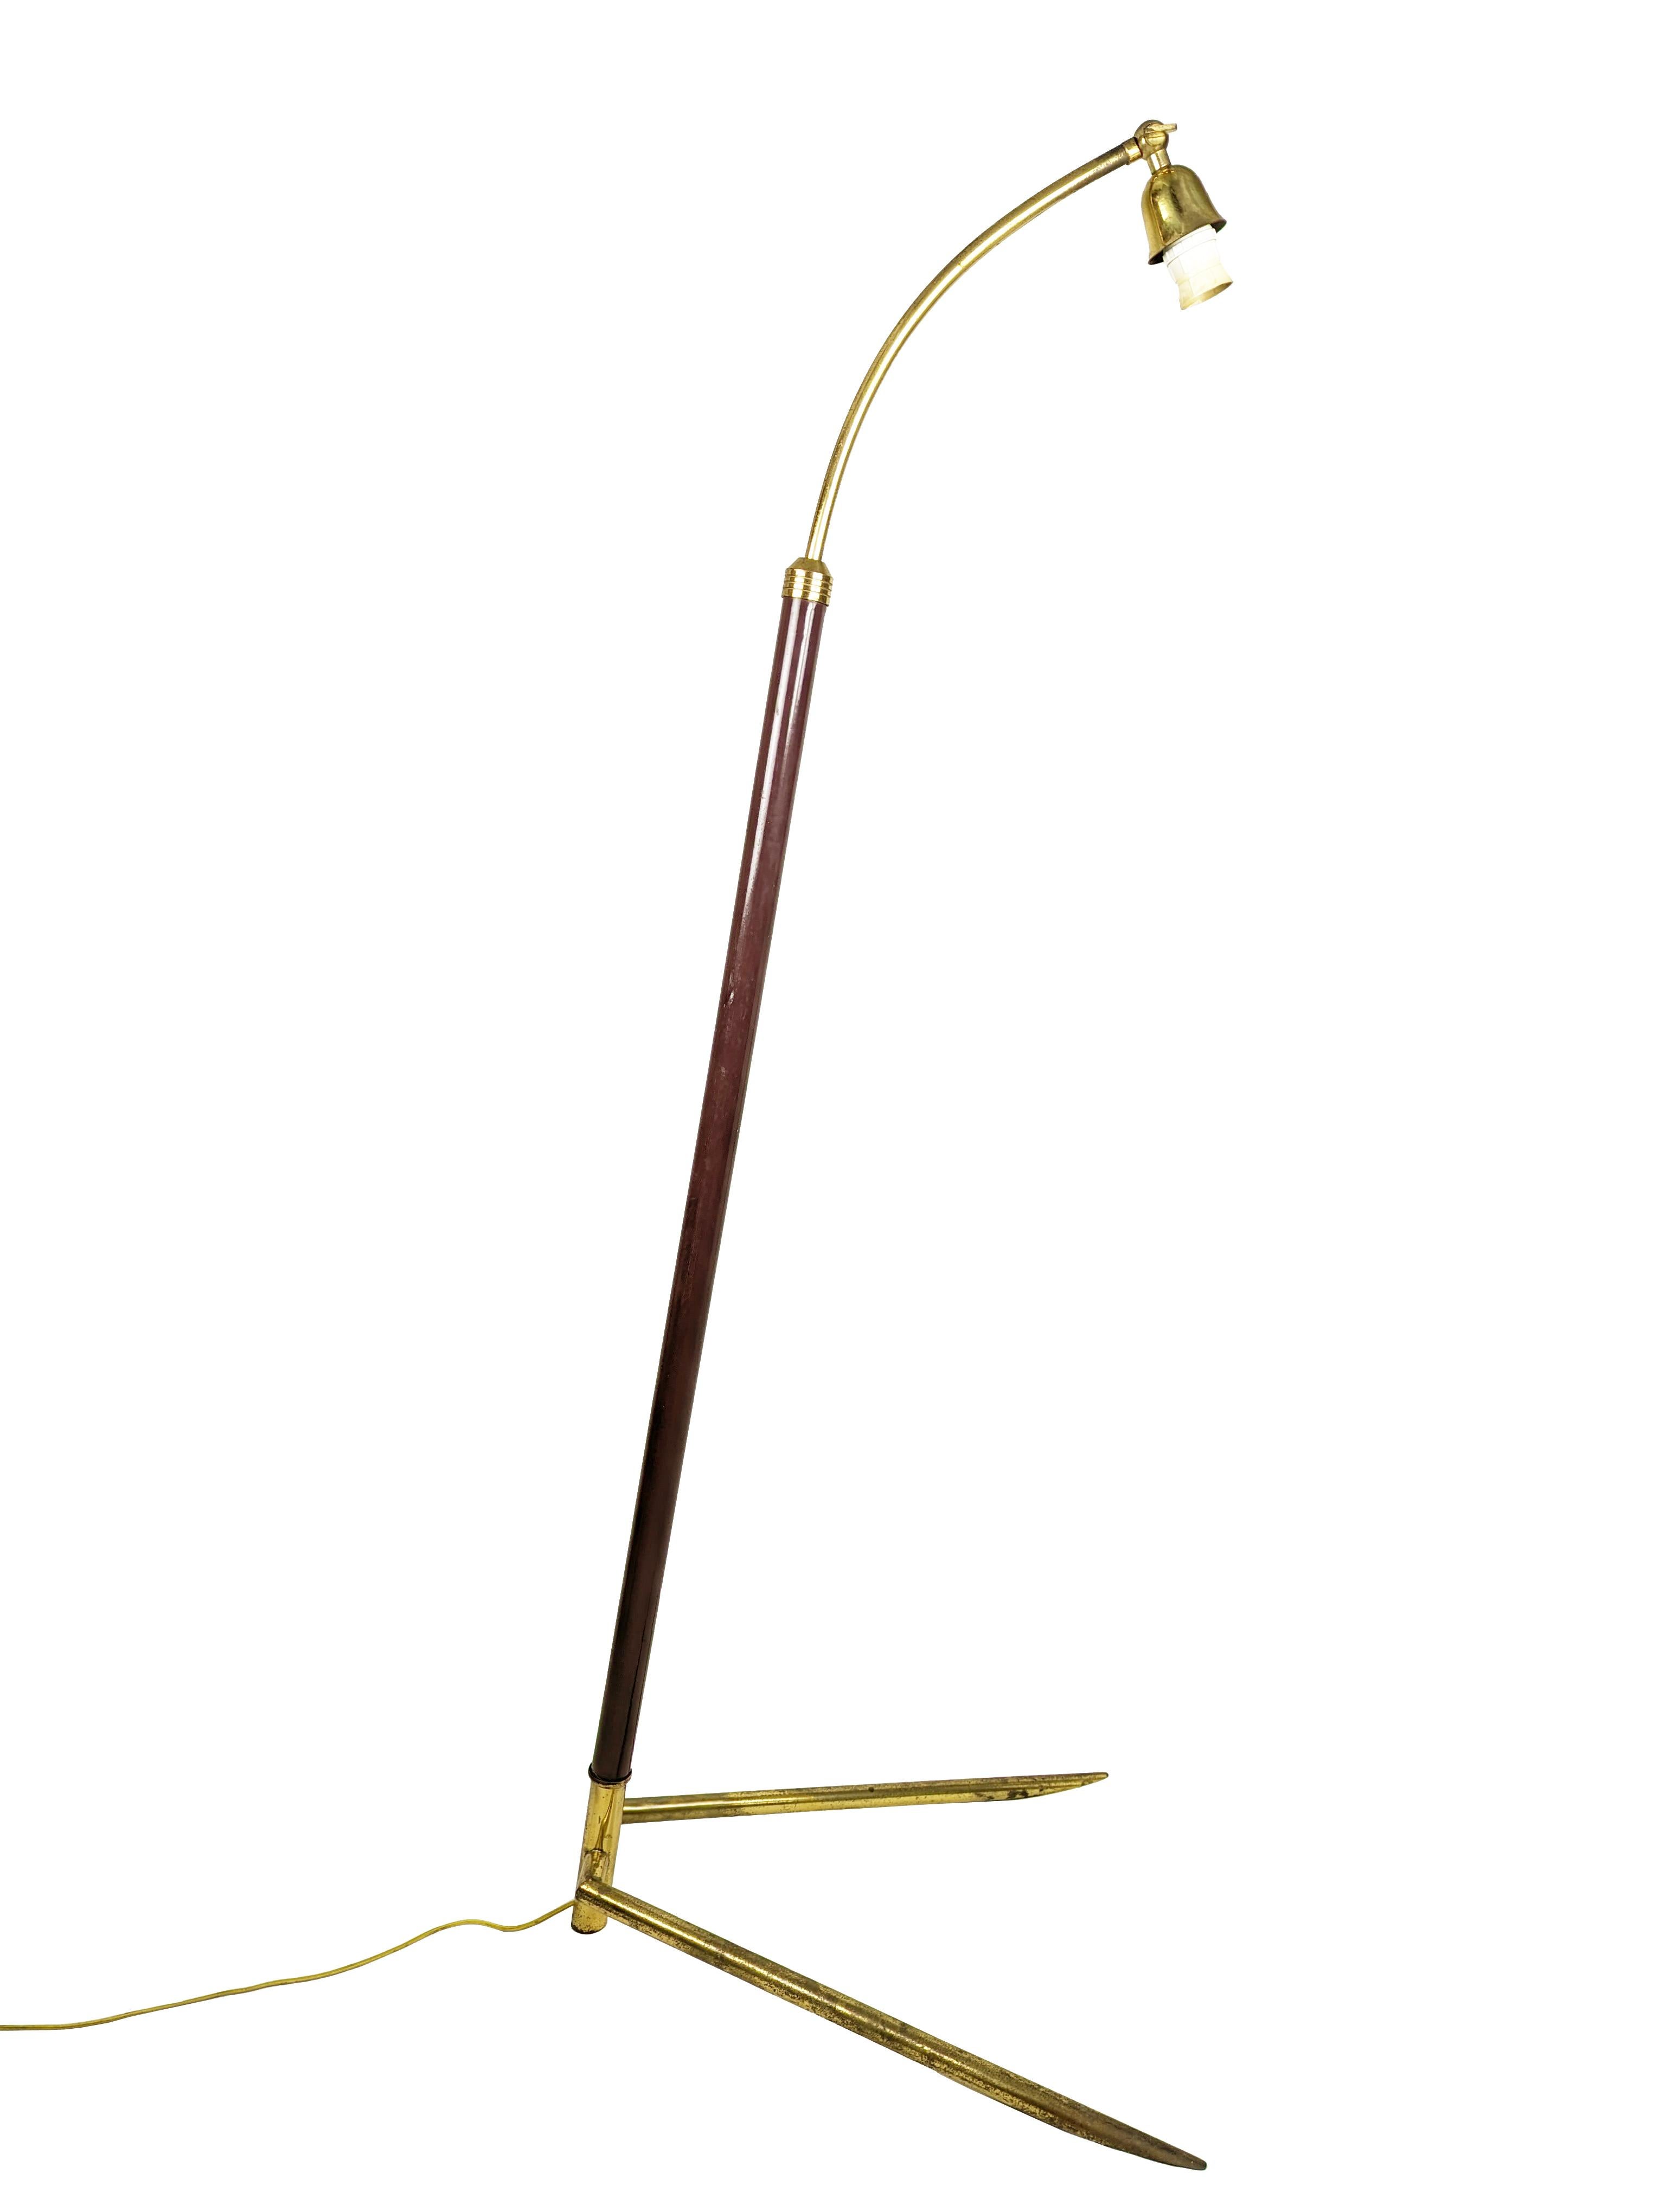 Moderne Stehlampe aus der Mitte des Jahrhunderts, hergestellt in Italien um 1950 in einer seltenen Version mit Dreibeinfuß. Sockel aus Messing, weinrot lackierte Stange mit verstellbarer Höhe: von cm 138 bis max. 200. Die Leuchte bleibt in